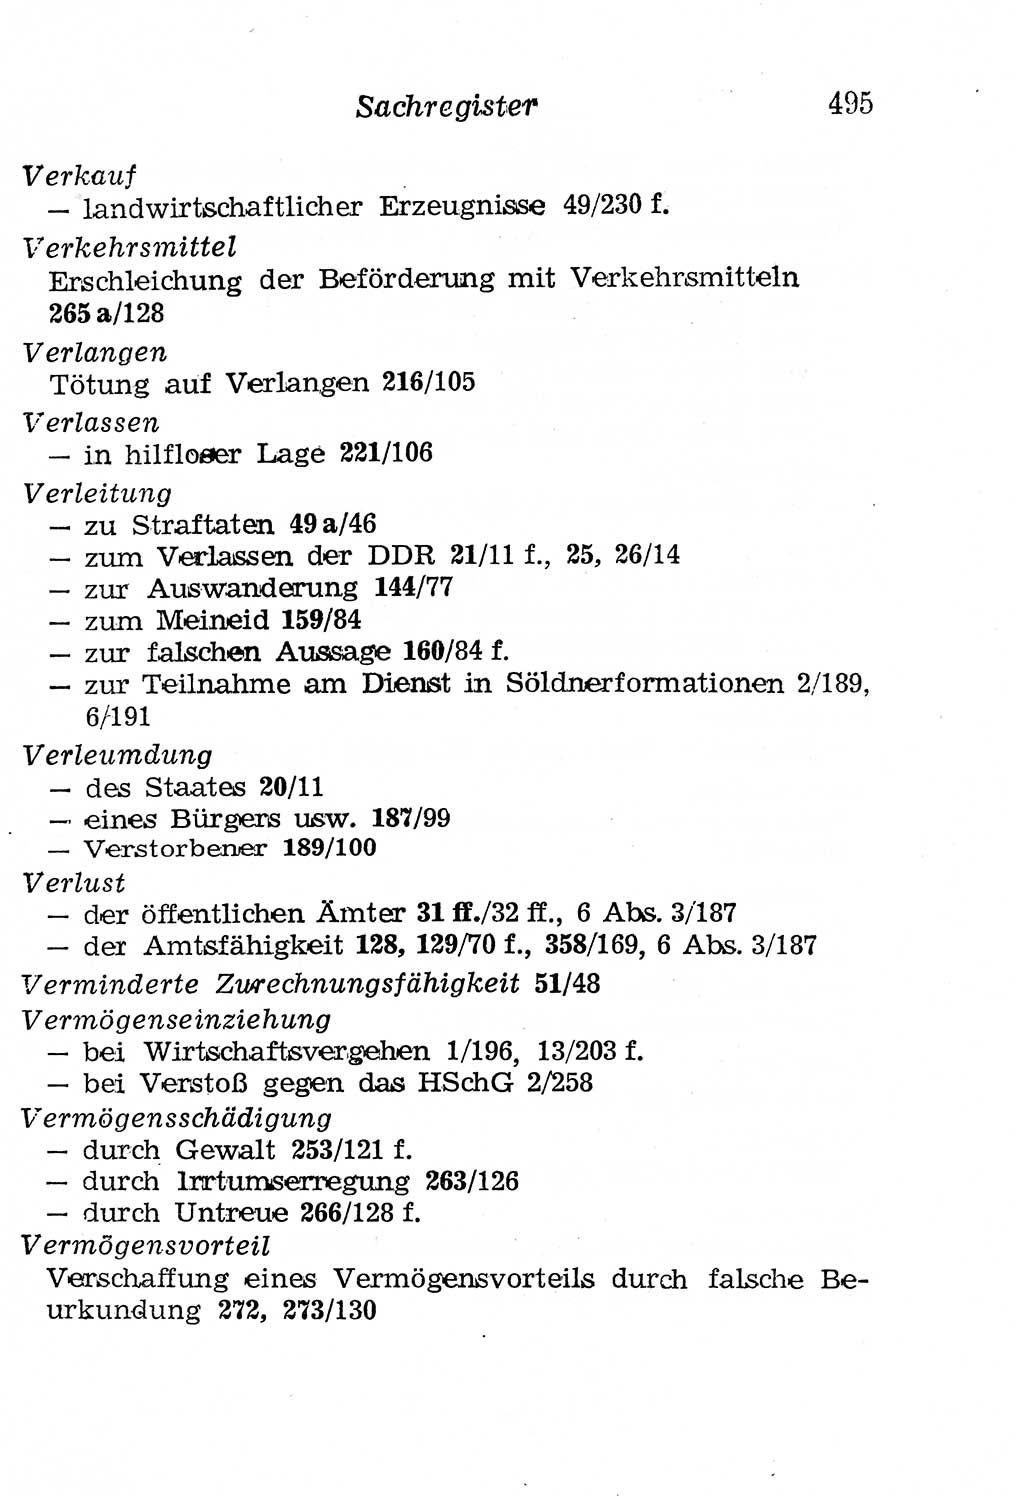 Strafgesetzbuch (StGB) und andere Strafgesetze [Deutsche Demokratische Republik (DDR)] 1958, Seite 495 (StGB Strafges. DDR 1958, S. 495)